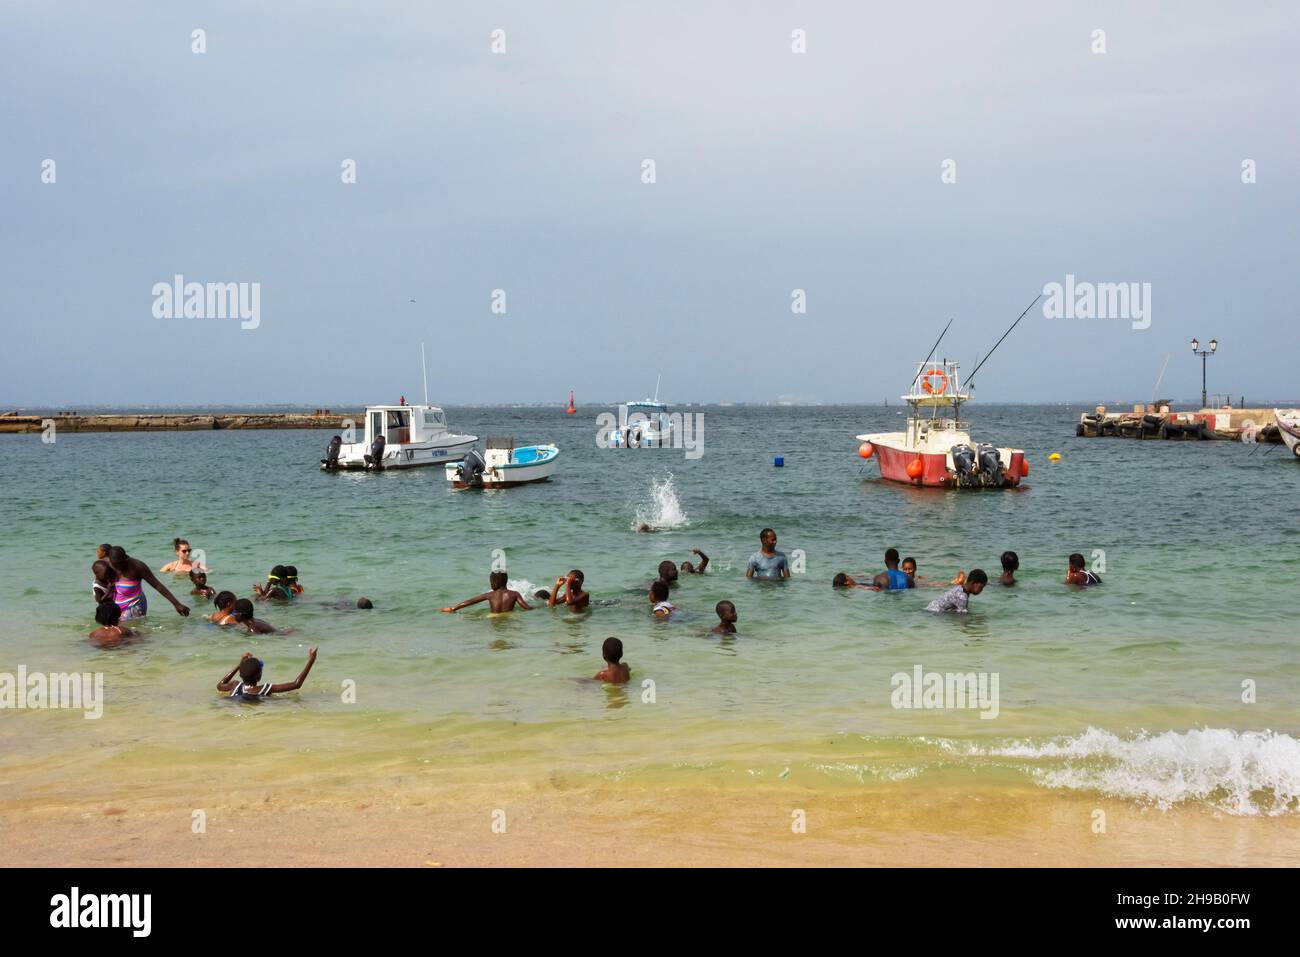 Bateau de pêche dans l'océan et la plage sur l'île de Goree, site classé au patrimoine mondial de l'UNESCO, Dakar, Sénégal Banque D'Images